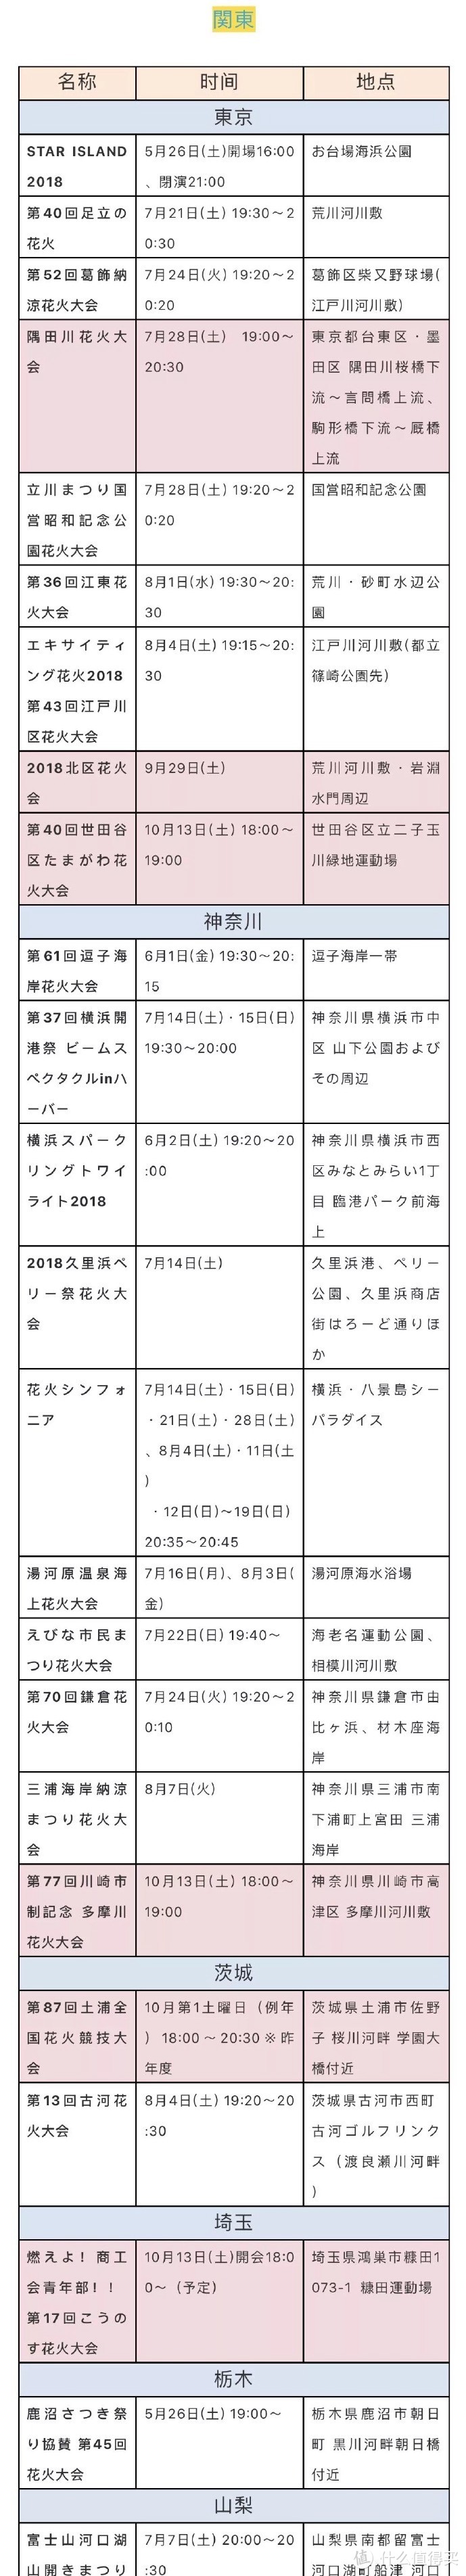 去日本看一场最美的“夏之风物诗”——2018日本花火大会时间表及酒店推荐